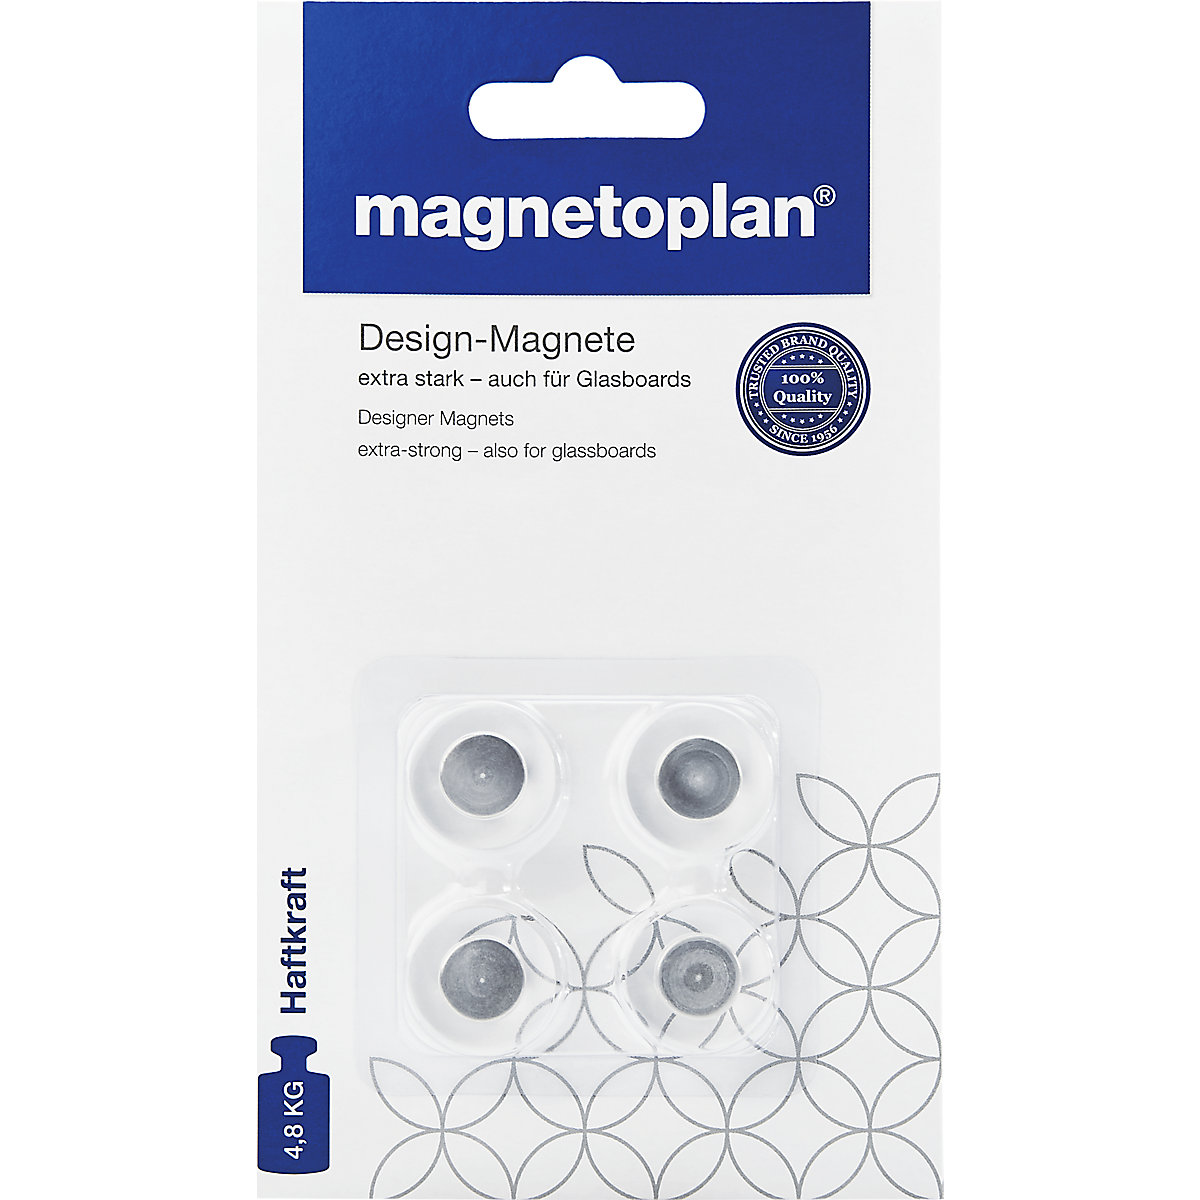 Lepo oblikovan magnet – magnetoplan